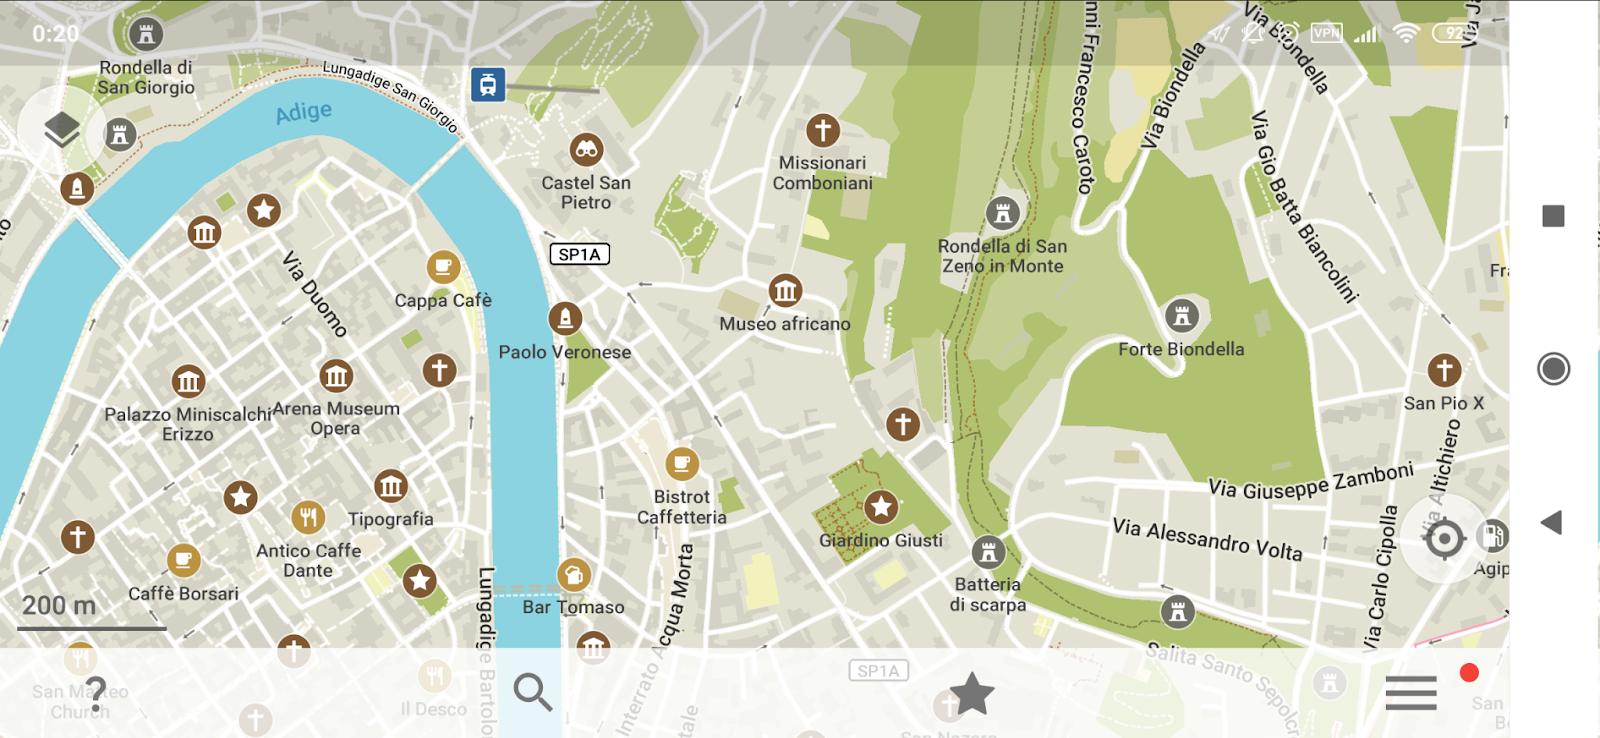 Интервью с создателями Organic Maps — открытых мобильных карт на основе OpenStreetMap - 1